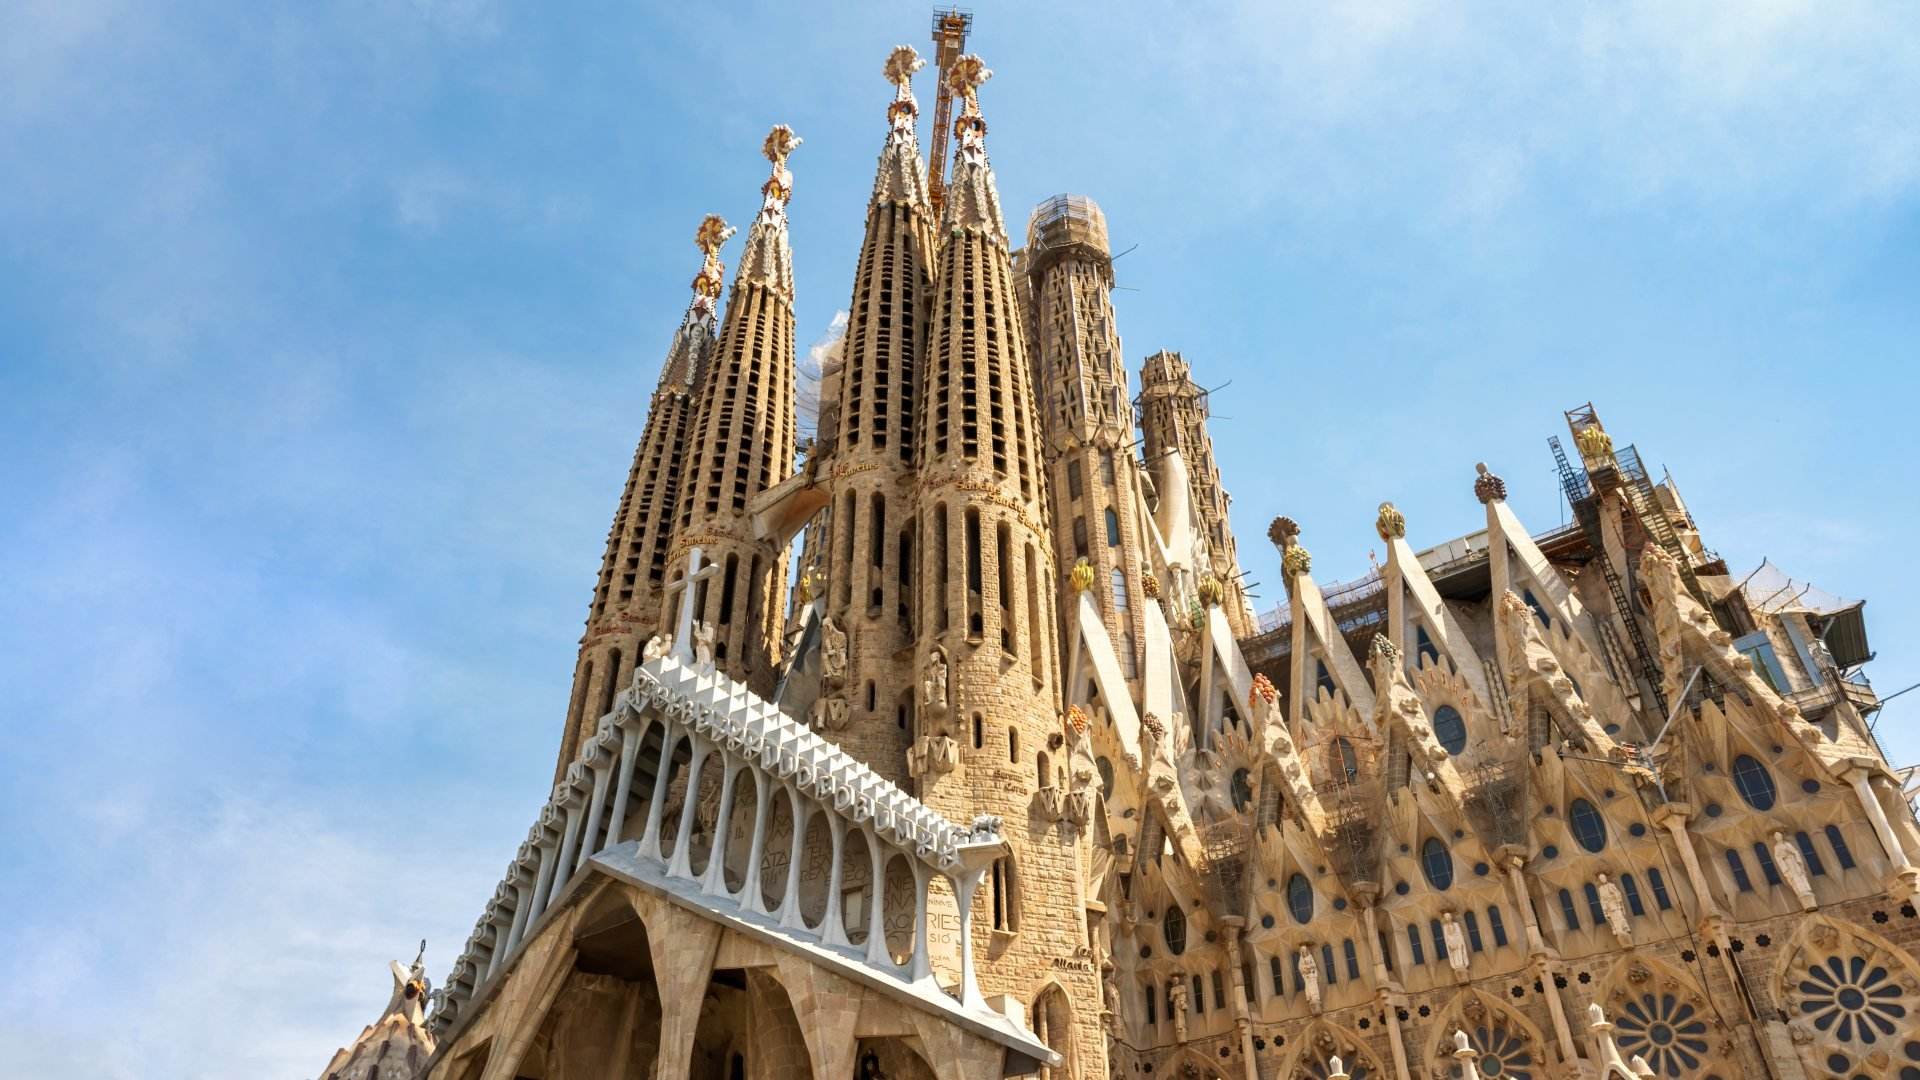 Les 7 millors coses que pots fer a Barcelona completament gratis